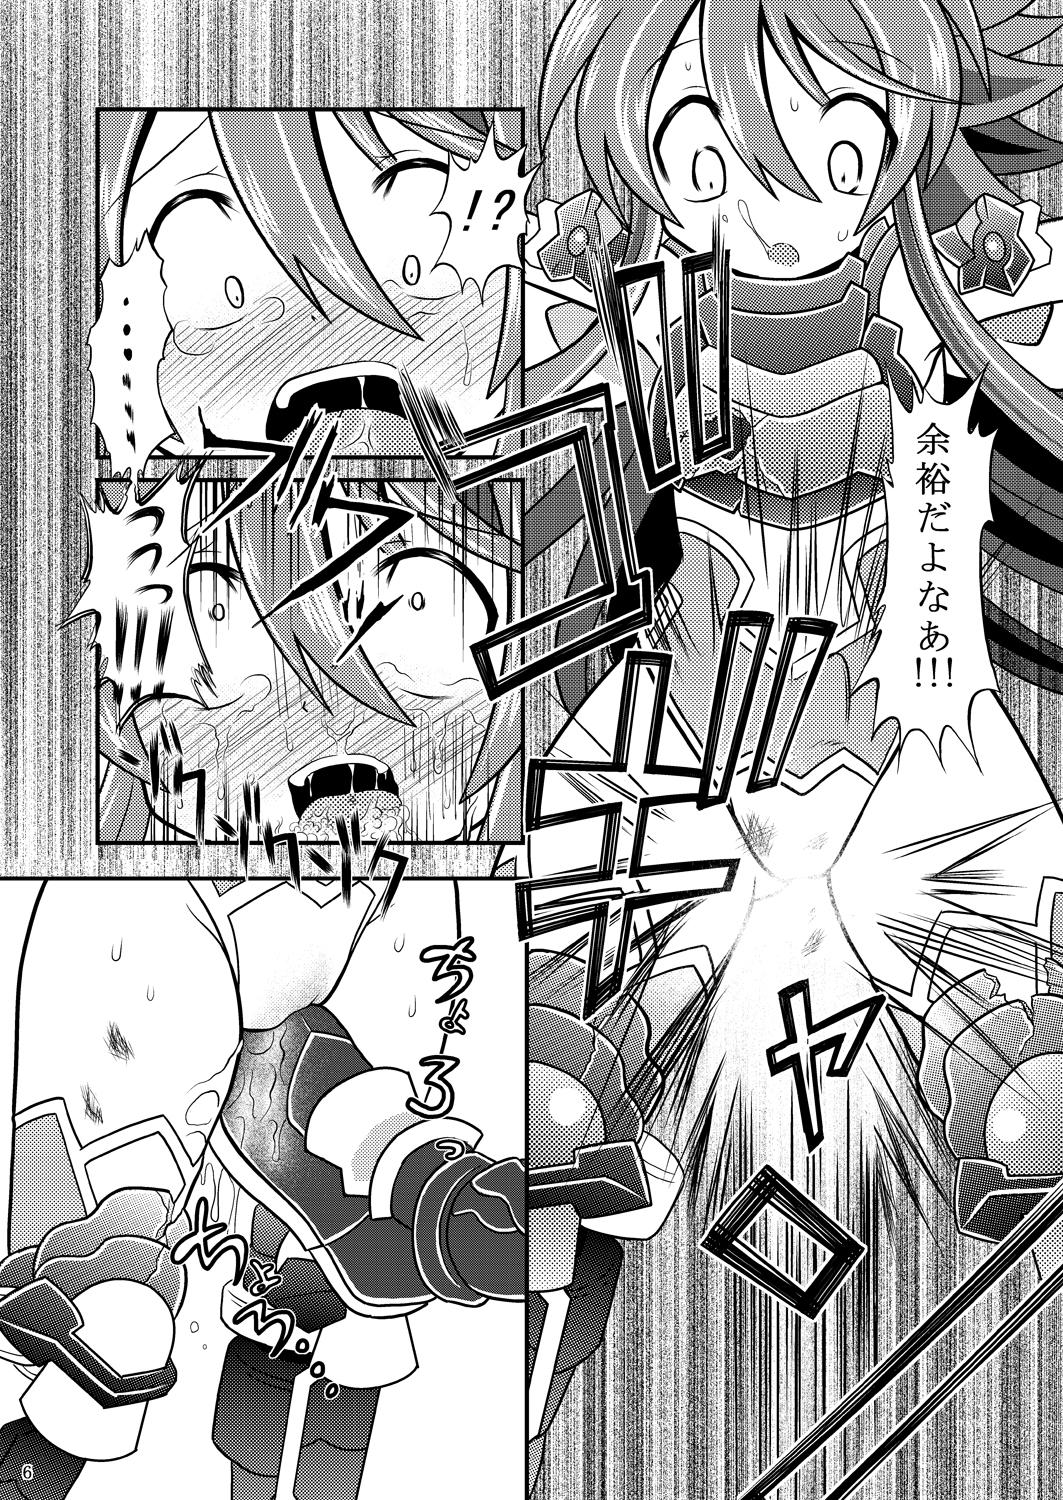 Love Suireiken vs Zettai Bouryoku - Shinrabansho Teamskeet - Page 5